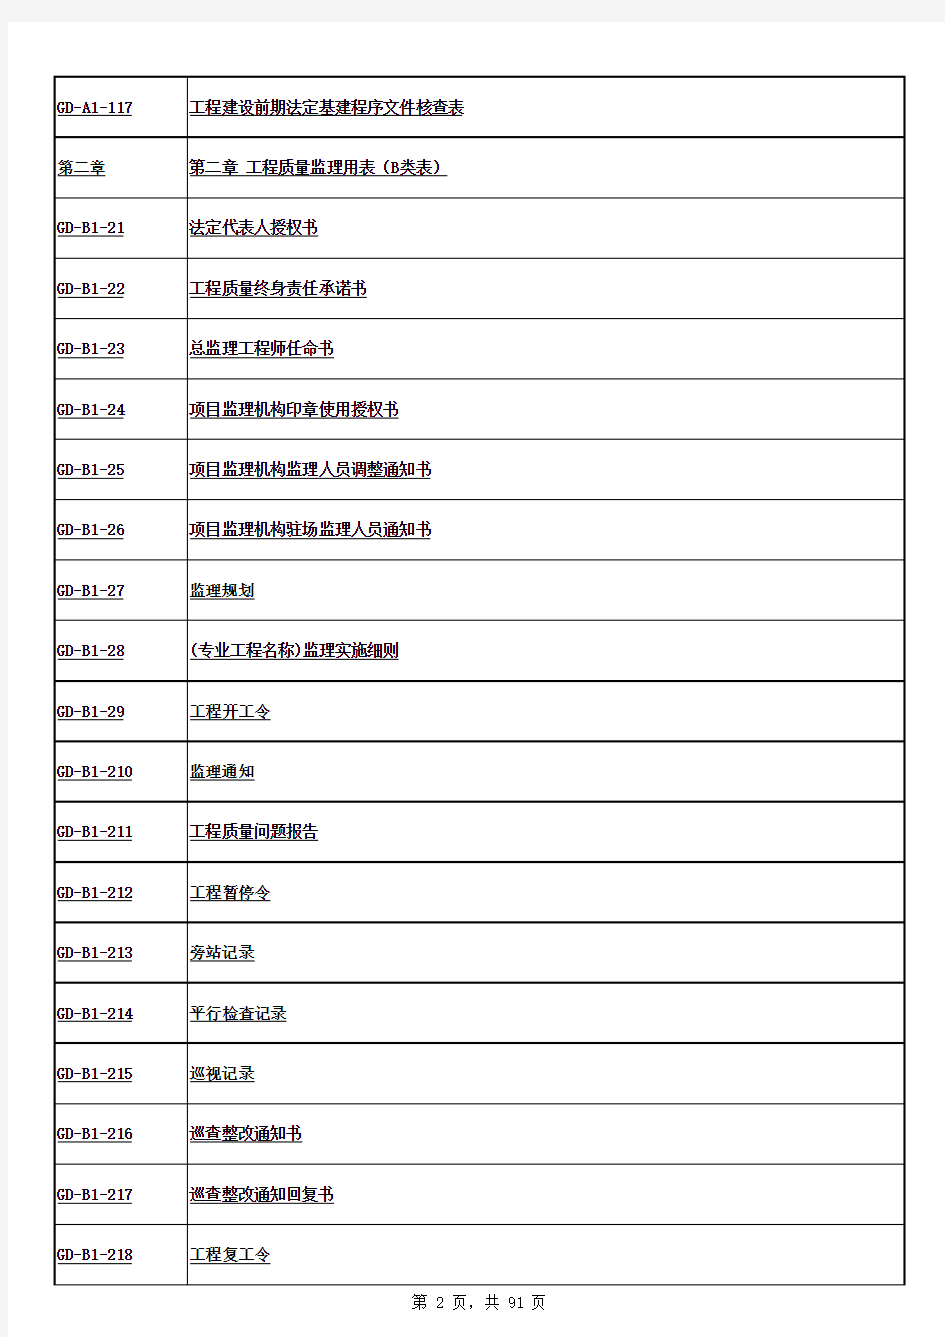 广东省房屋建筑工程竣工验收技术资料统一用表(2016版最新)编号和名称速查表